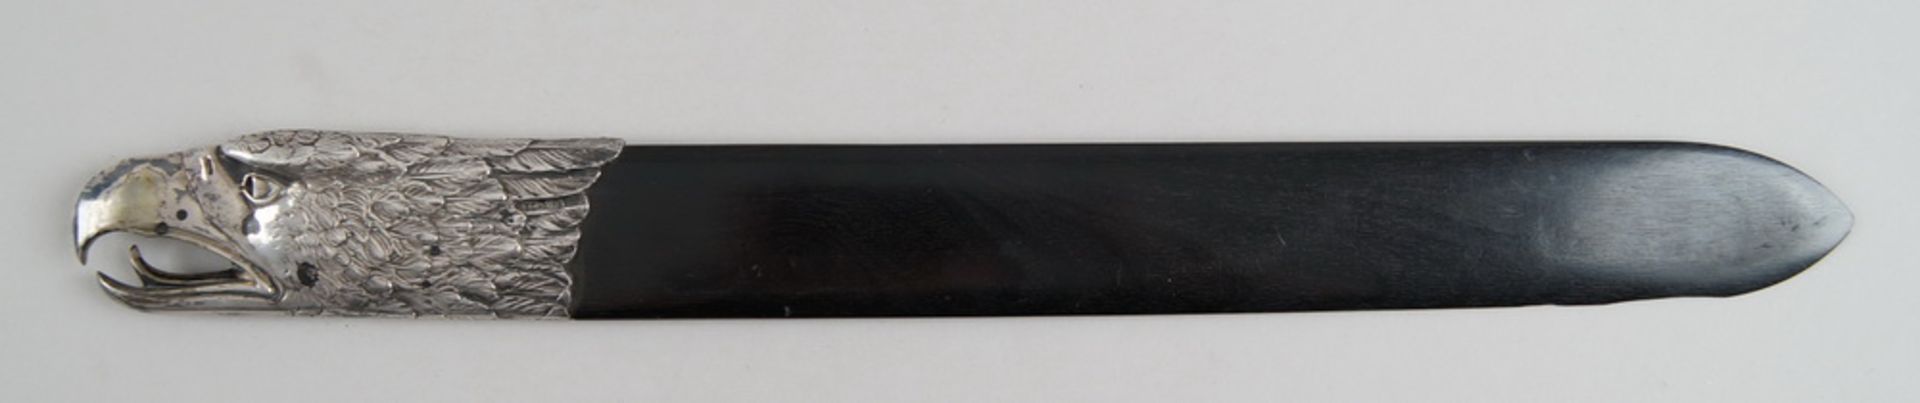 Grosser Brieföffner, Holzschaft mit Silbermontierung, Adlerkopf, gepunzt, L 43 cm- - -24.00 % - Bild 3 aus 6